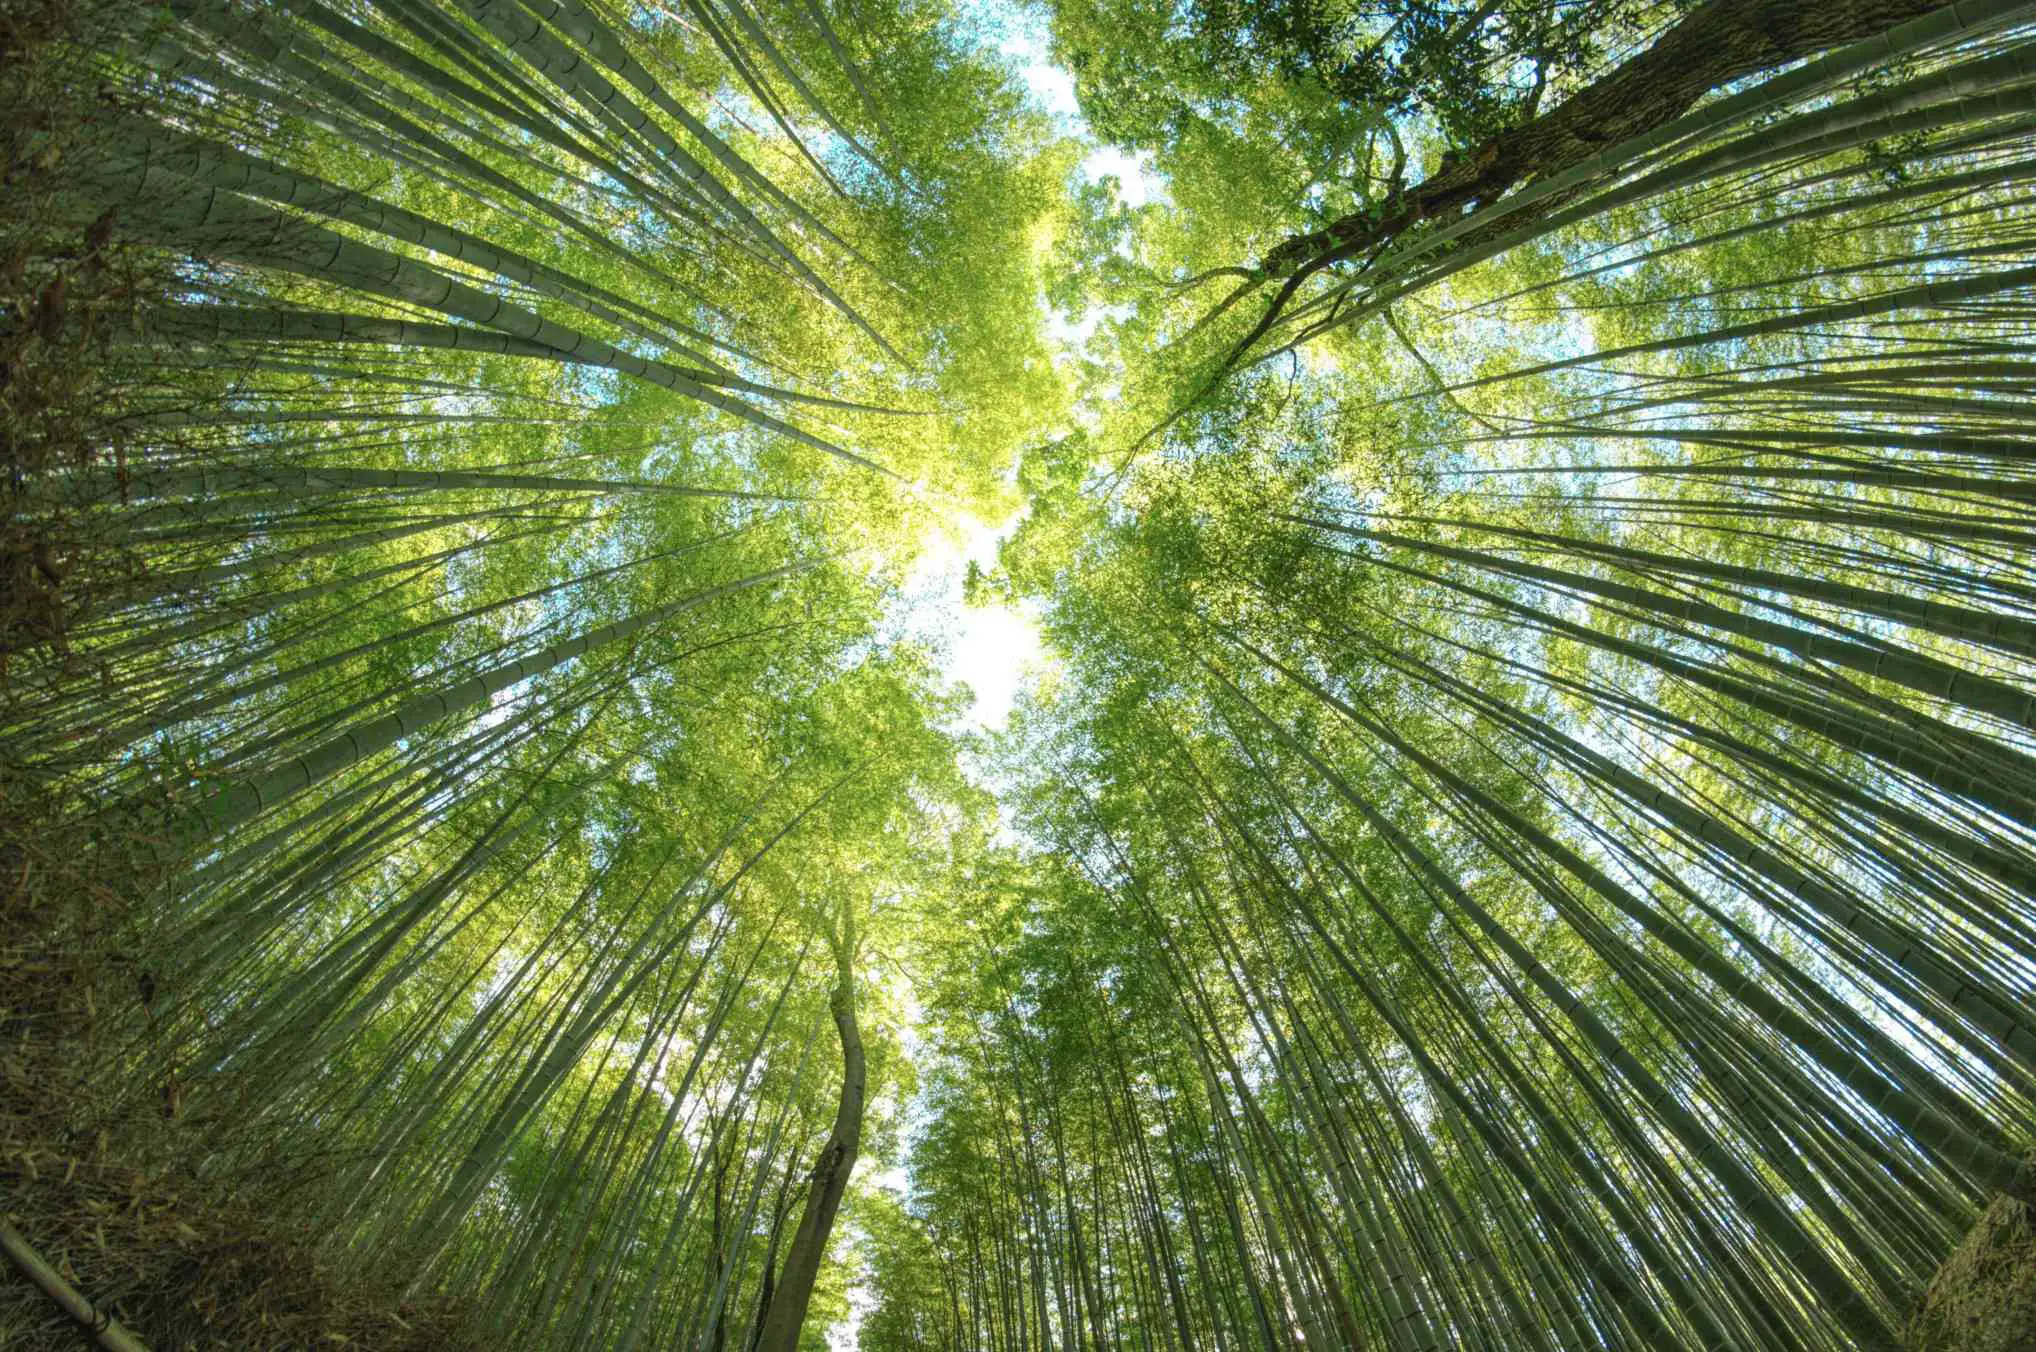 Uma floresta de bambu fotografada olhando diretamente para cima através de uma lente olho de peixe.